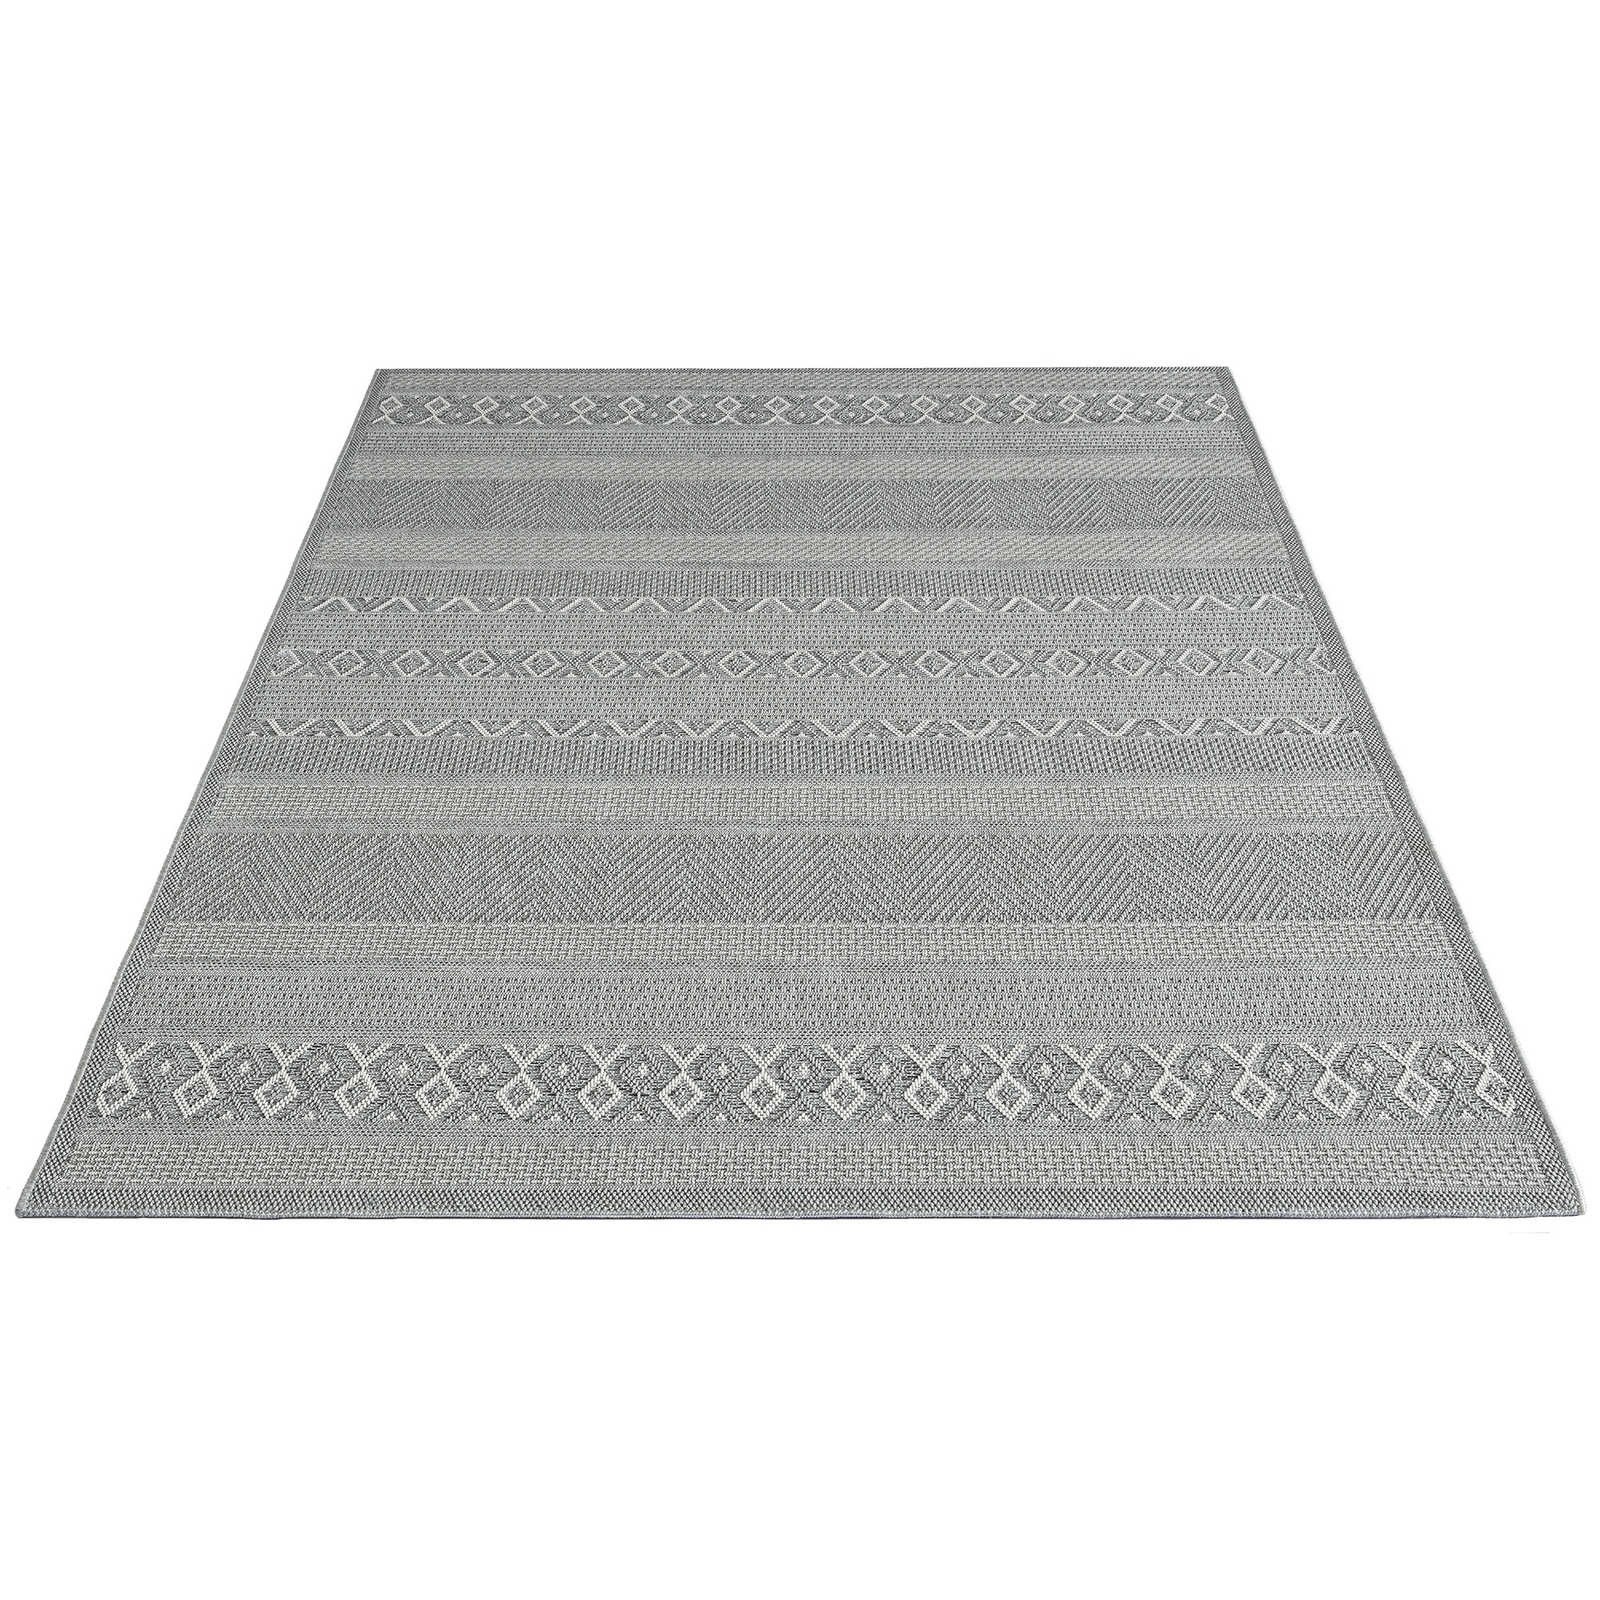 Buitenkleed met eenvoudig patroon in grijs - 280 x 200 cm
